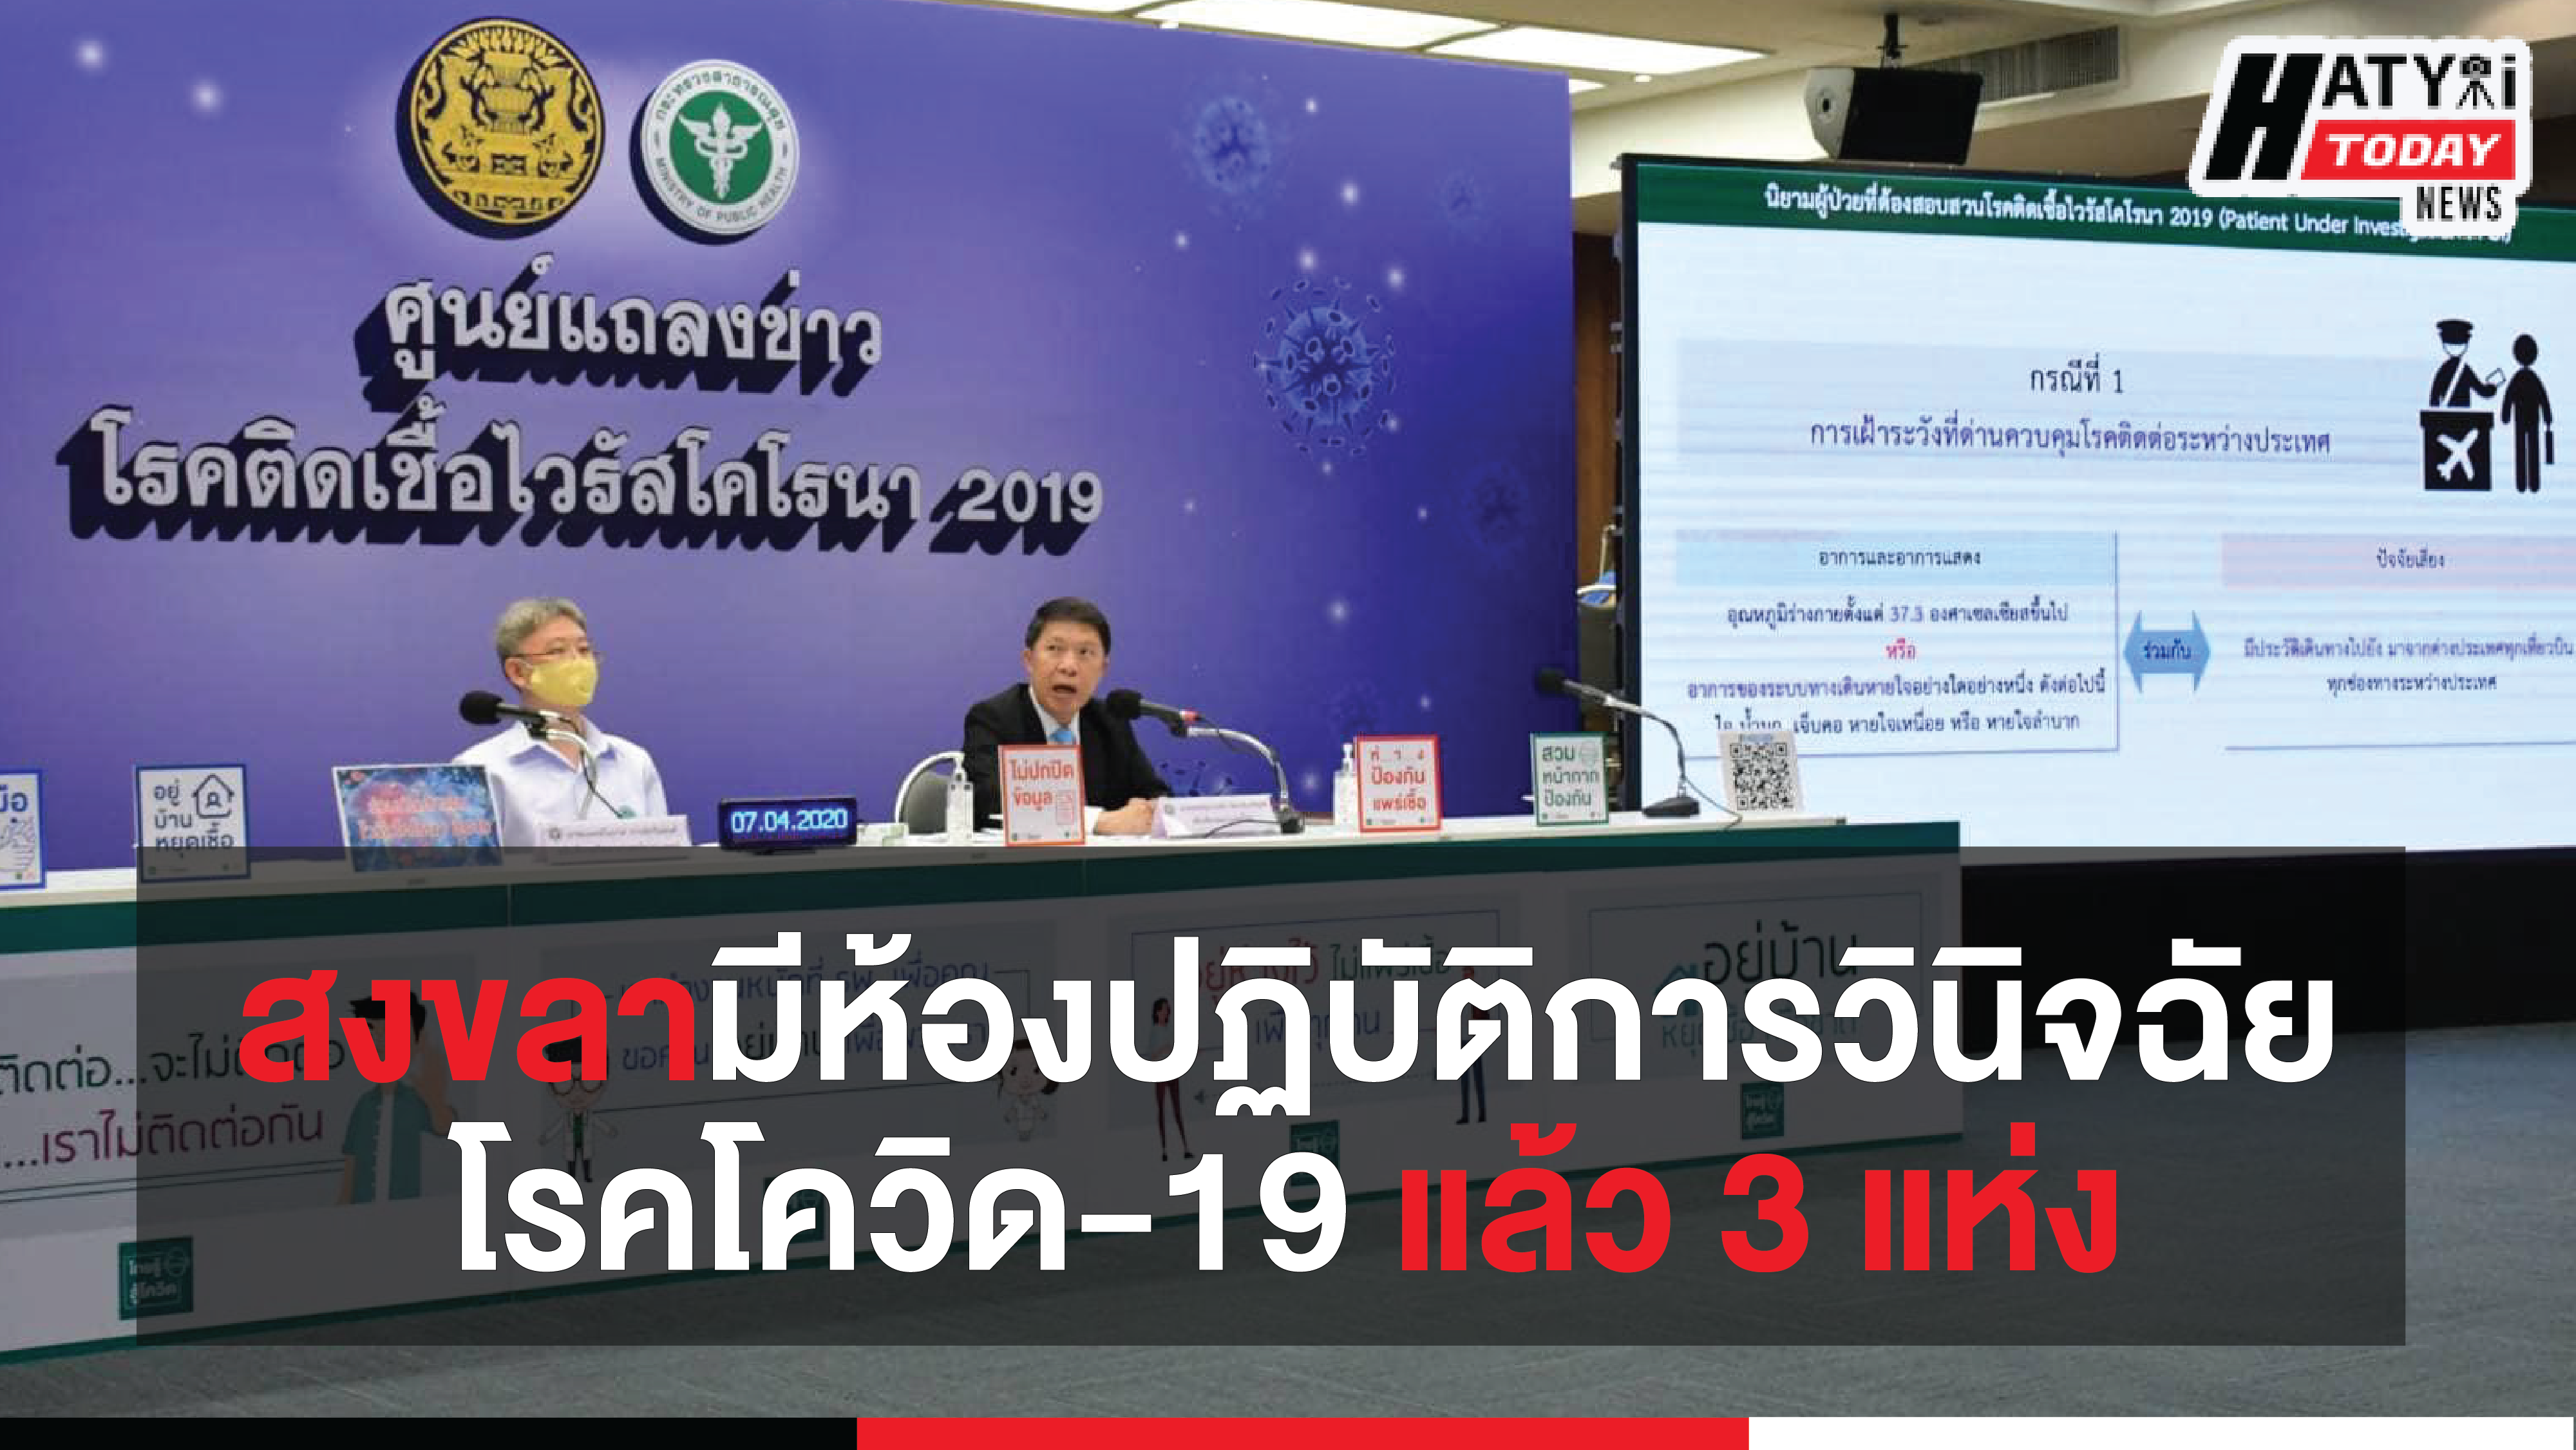 สงขลามีห้องปฏิบัติการเพื่อวินิจฉัยโรคโควิด-19 แล้ว 3 แห่ง รวมในไทยมี 80 แห่ง